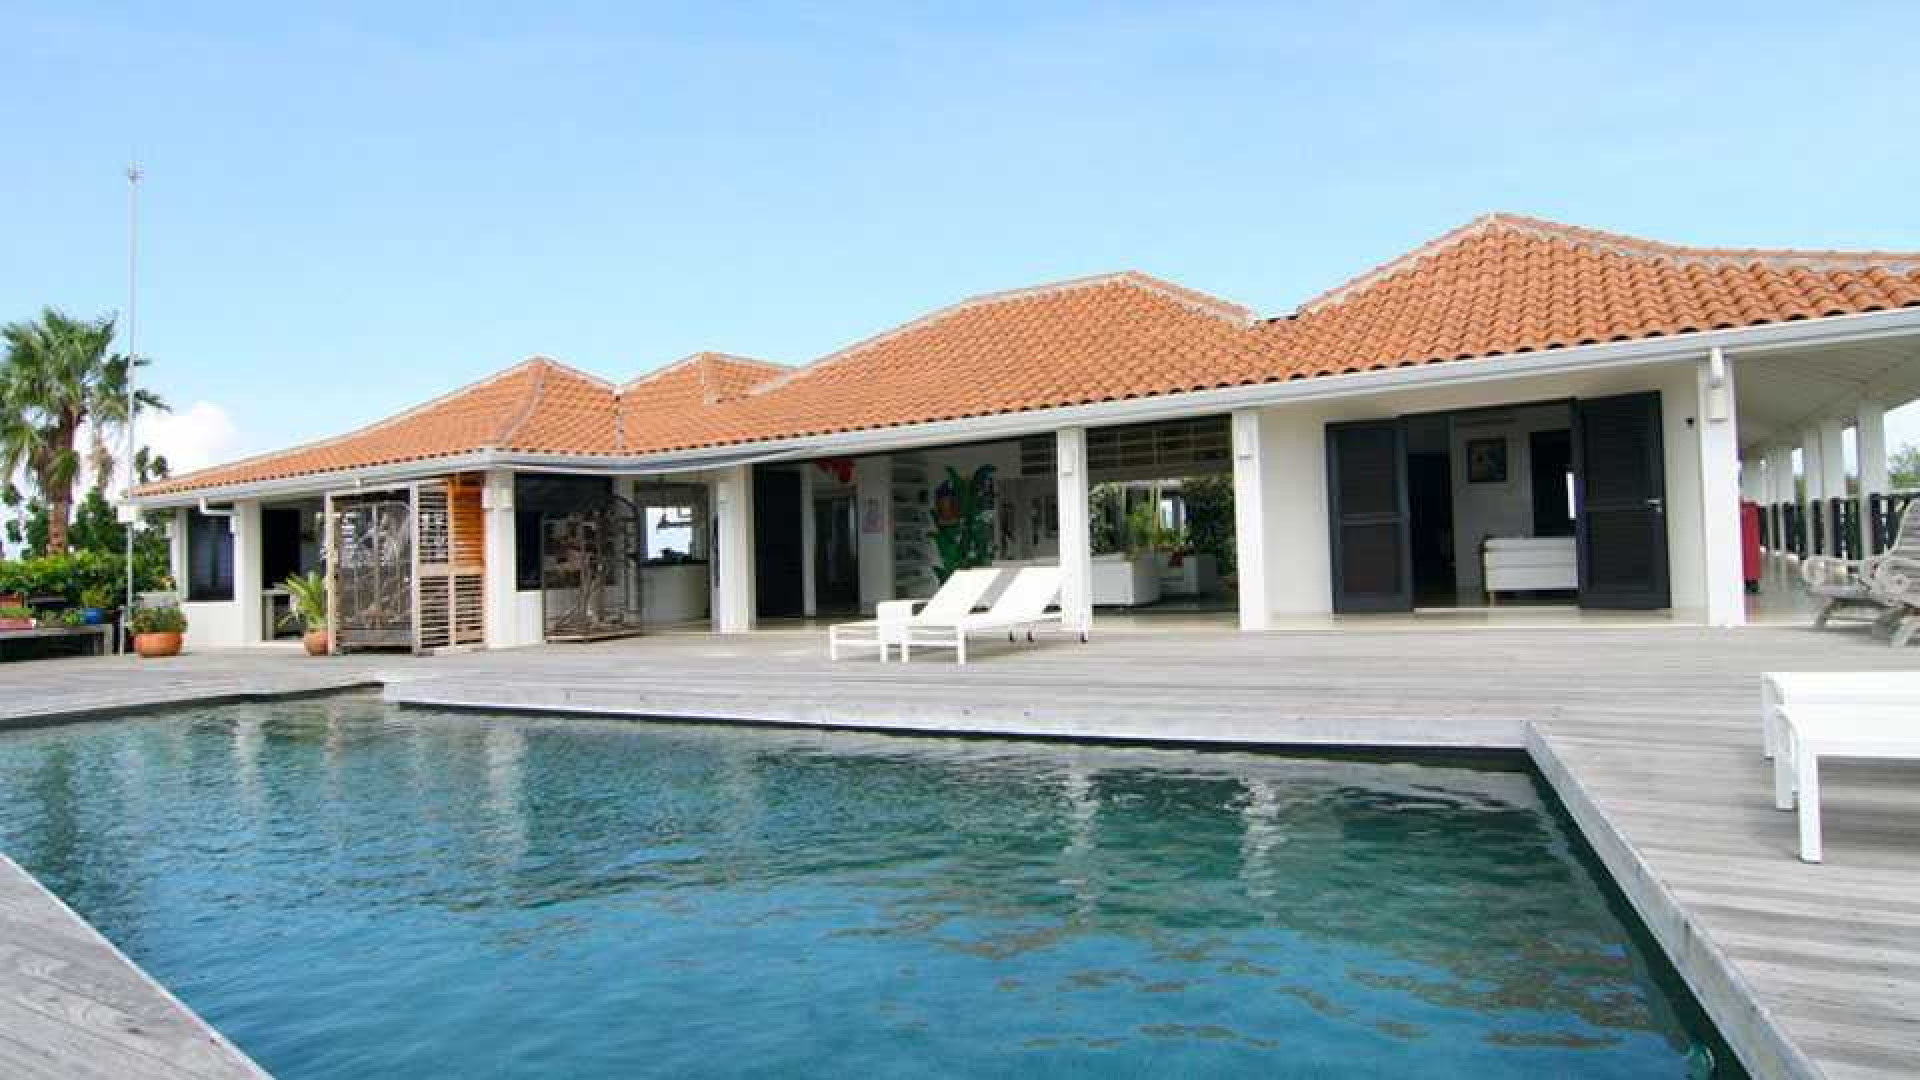 Barry Hay verlaagt vraagprijs van zijn miljoenen villa op Curacao. Zie foto's 3